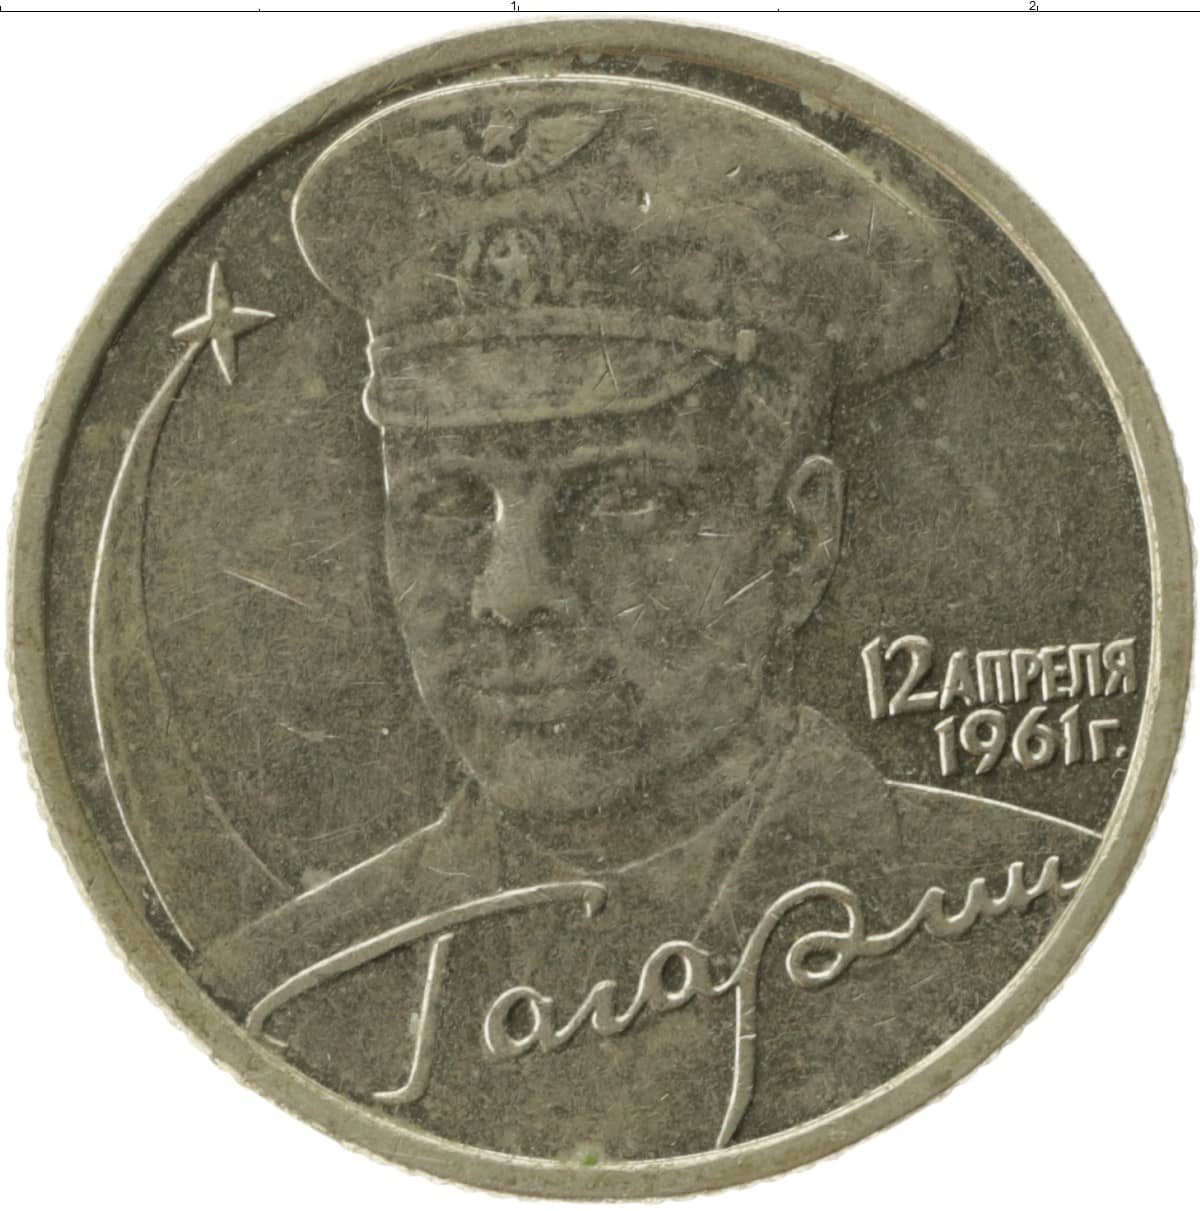 2 рубля 2001 года с гагариным. Монета 2 рубля Гагарин. 2 Рубля 2001 Гагарин. 2 Рубля 2001 Гагарин ММД. Монета 2 рубля Гагарина.